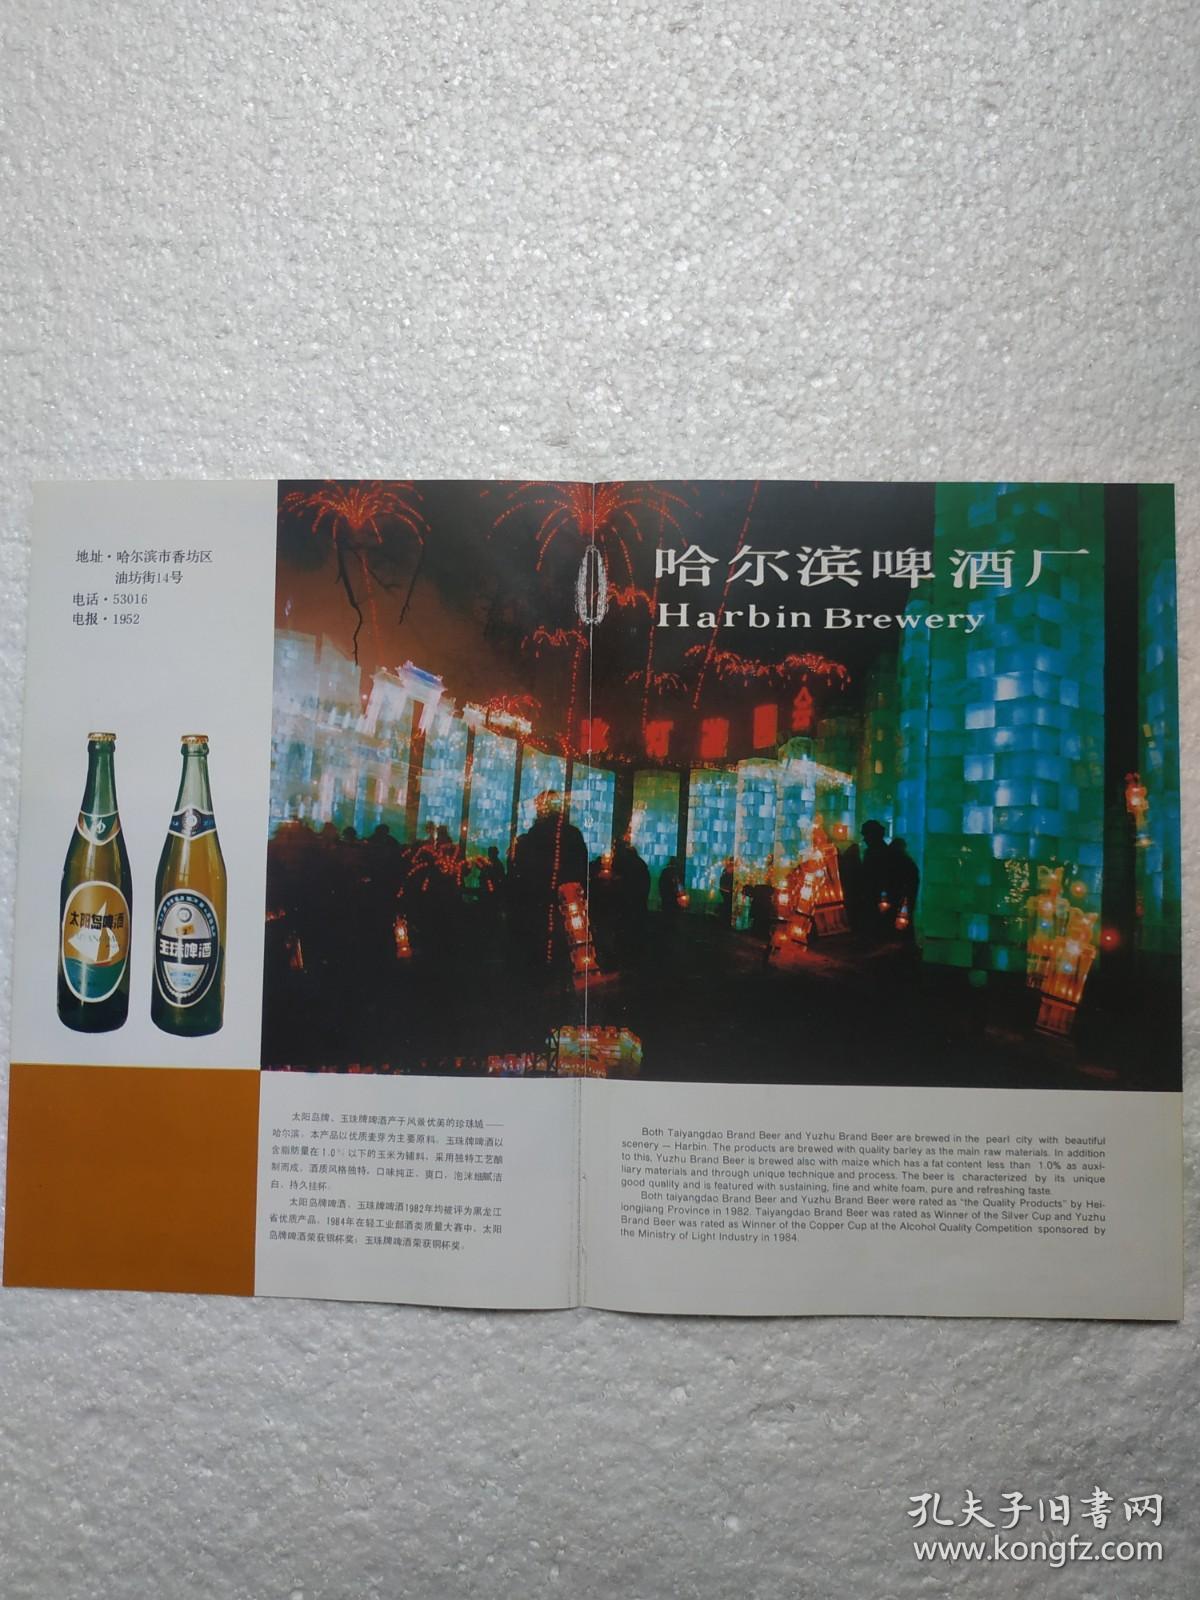 黑龙江酒，太阳岛啤酒，哈尔滨啤酒厂，新三星啤酒，一面坡啤酒厂，长春啤酒，长春啤酒厂，酒厂广告，二页四面，八十年代